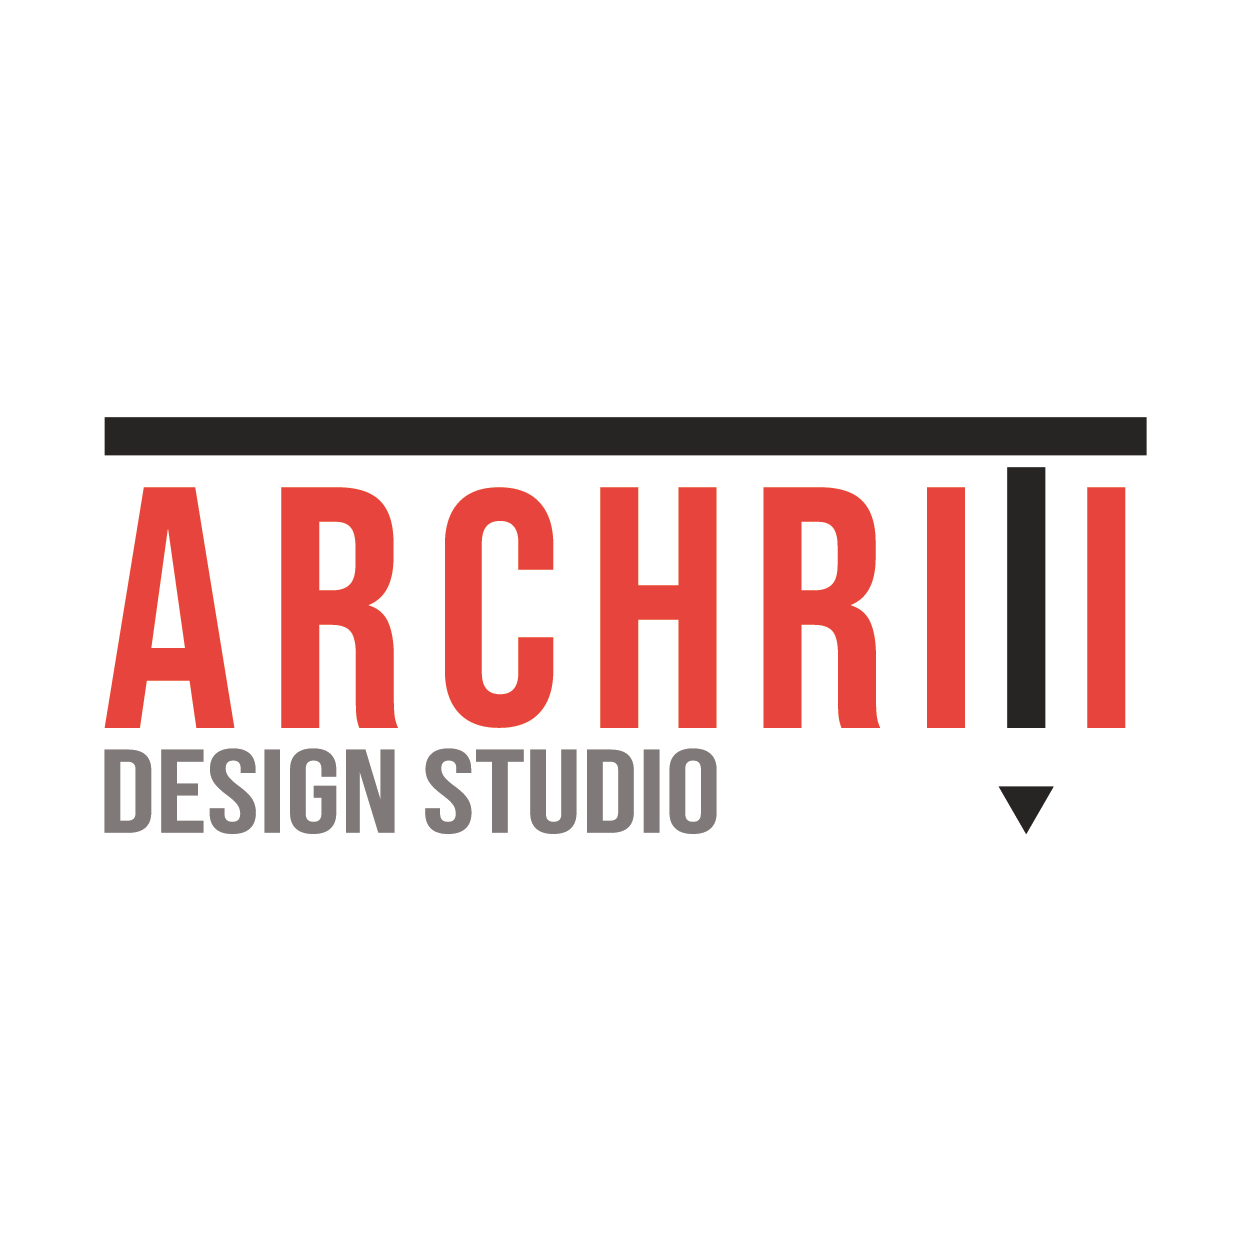 Archriti Design Studio|Architect|Professional Services